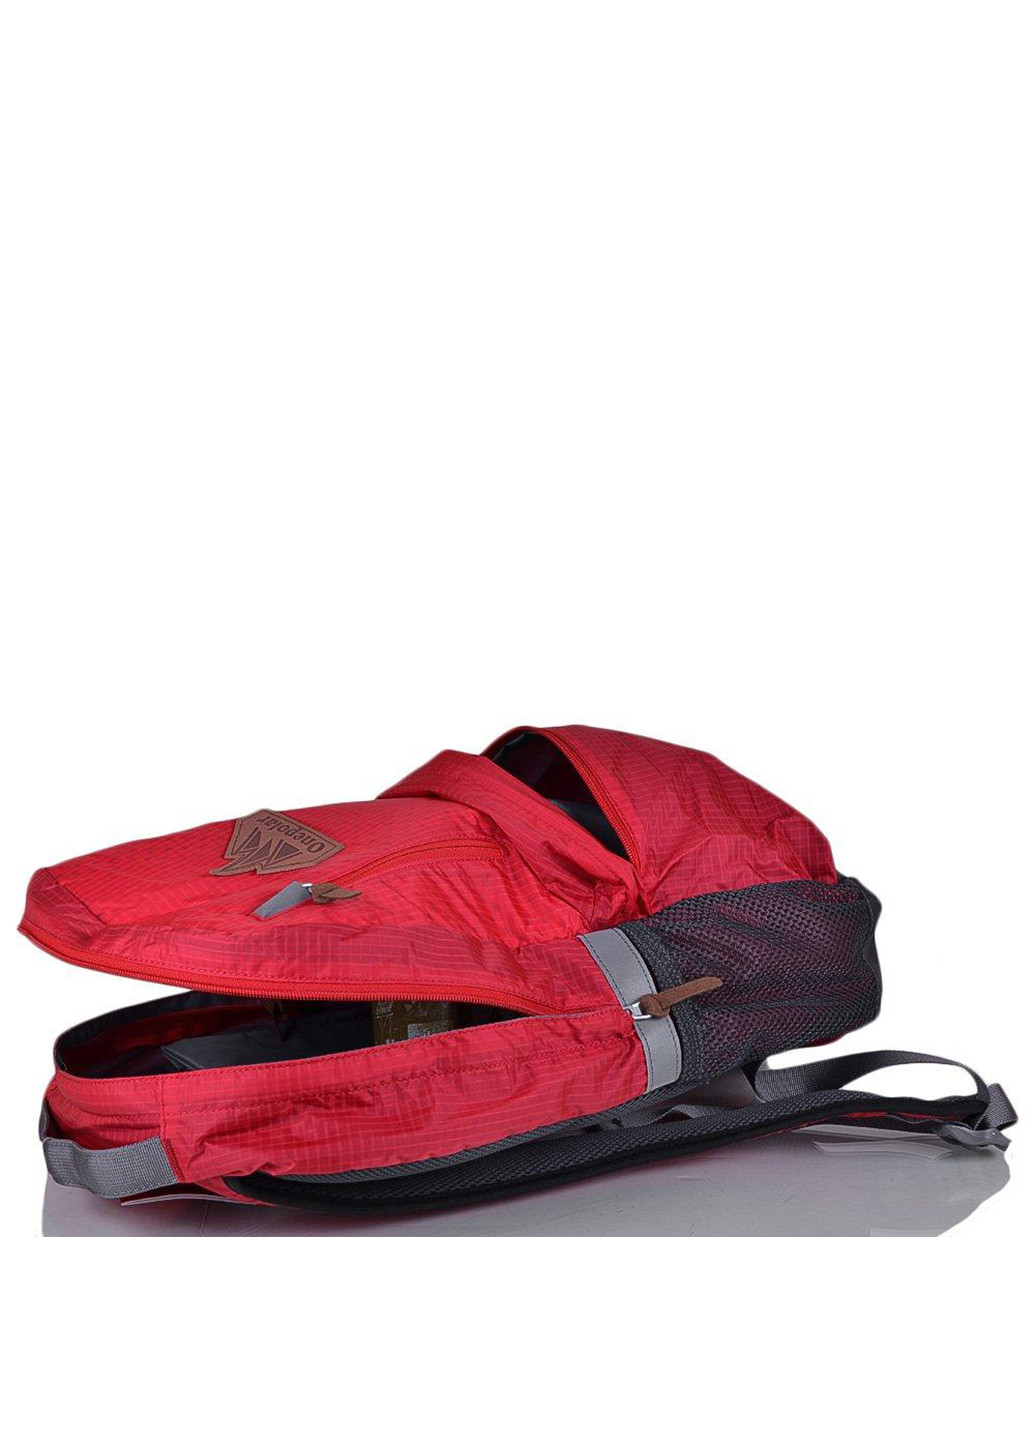 Жіночий рюкзак із відділенням для ноутбука. 33х45х15 см Onepolar (253032248)